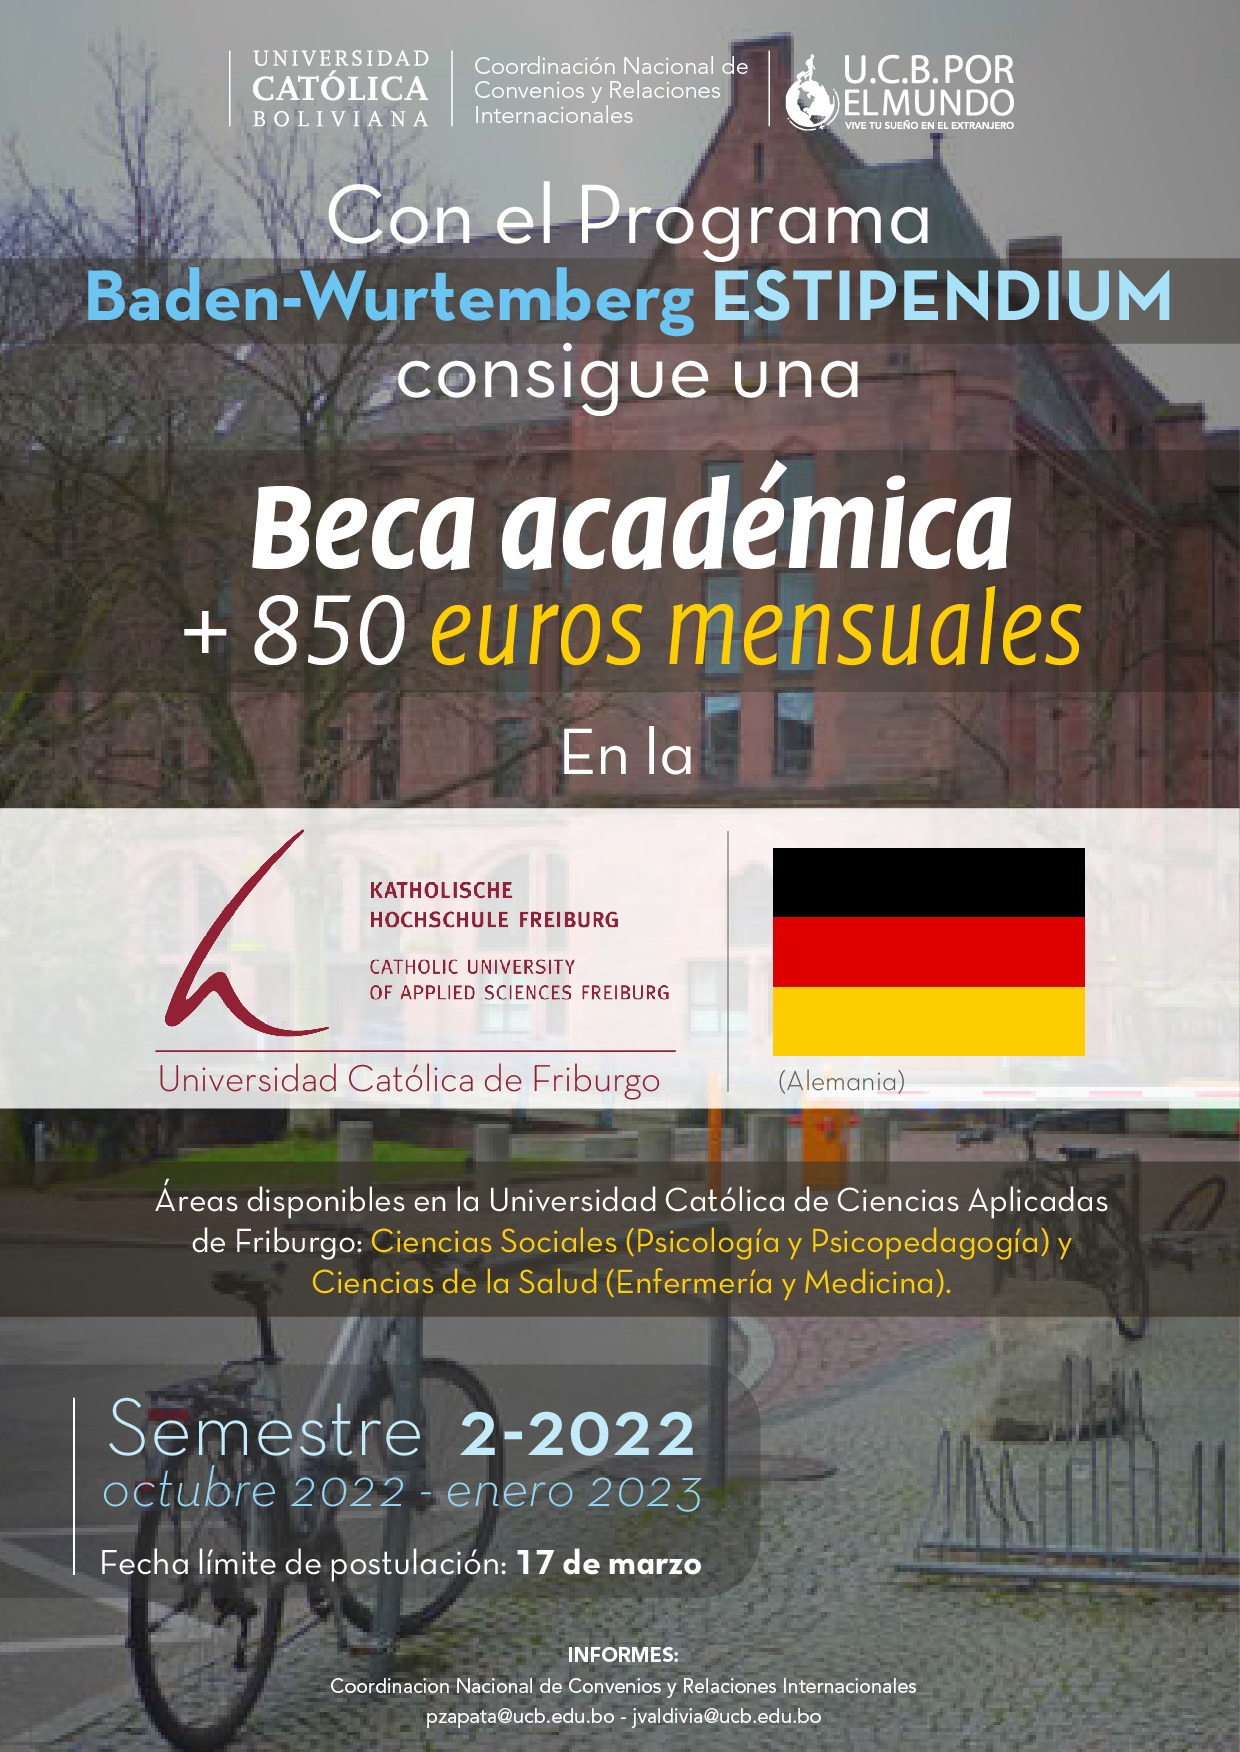 CONVOCATORIA DE BECA Programa de Becas Baden-Württemberg Stiftung para la Movilidad de estudiantes en la Universidad Católica de Friburgo en Alemania.